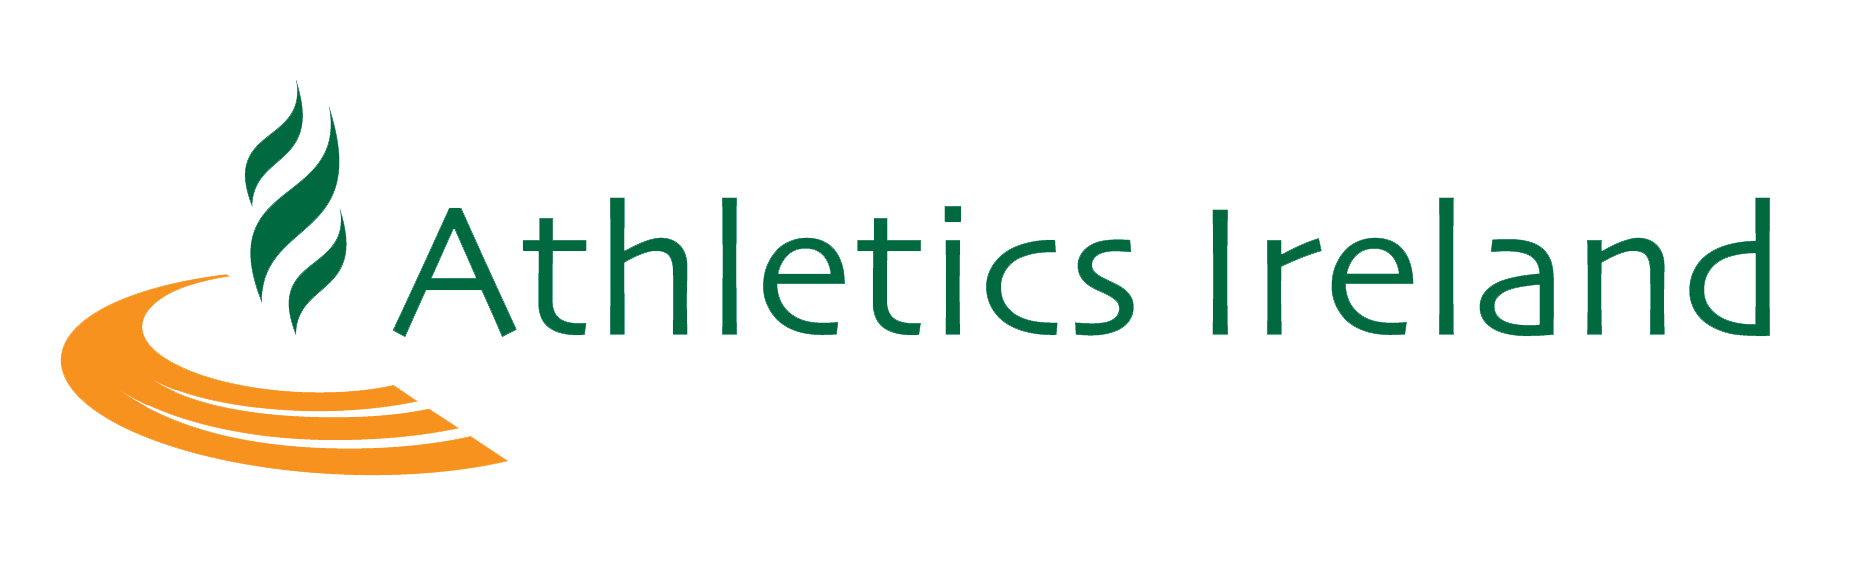 Athletics Ireland logo.png